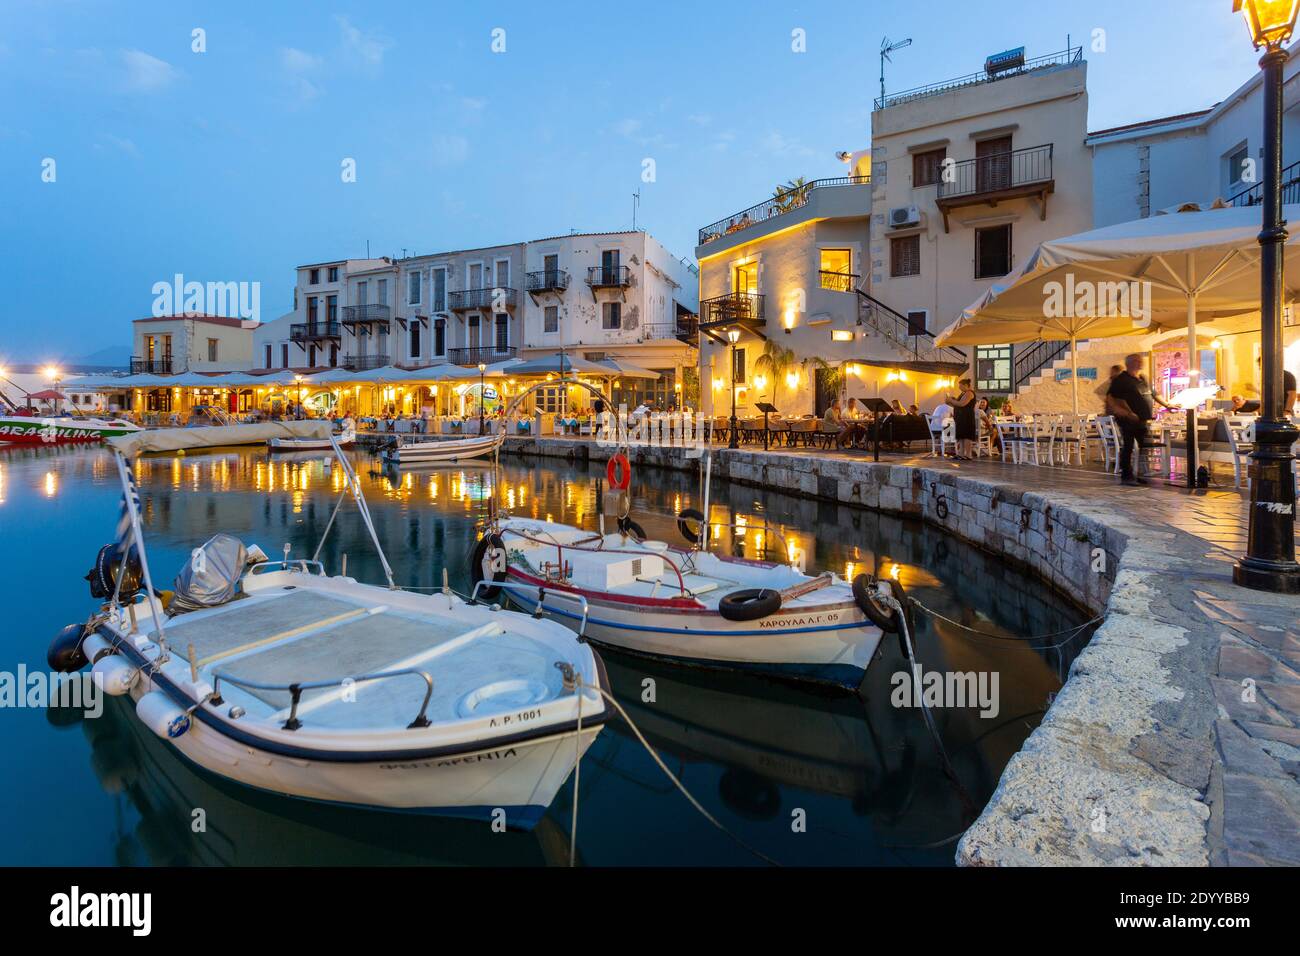 Boote und Tavernen am Wasser beleuchtet am Abend im alten venezianischen Hafen, Rethymno, Kreta, Griechenland Stockfoto